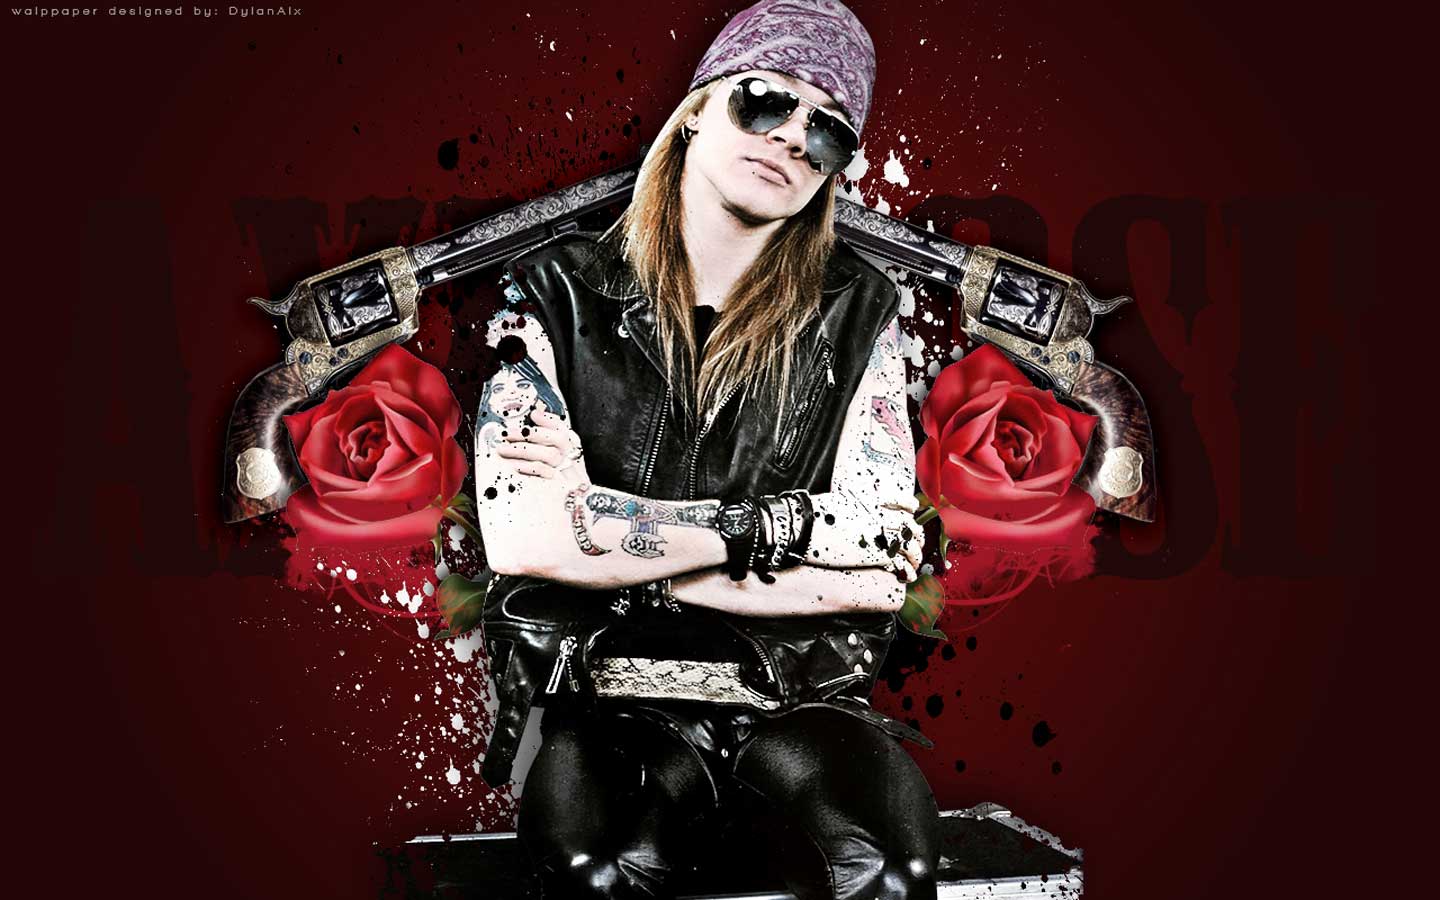 Guns-n-roses-wallpaper-downloads-195 53760 Desktop Wallpapers ...